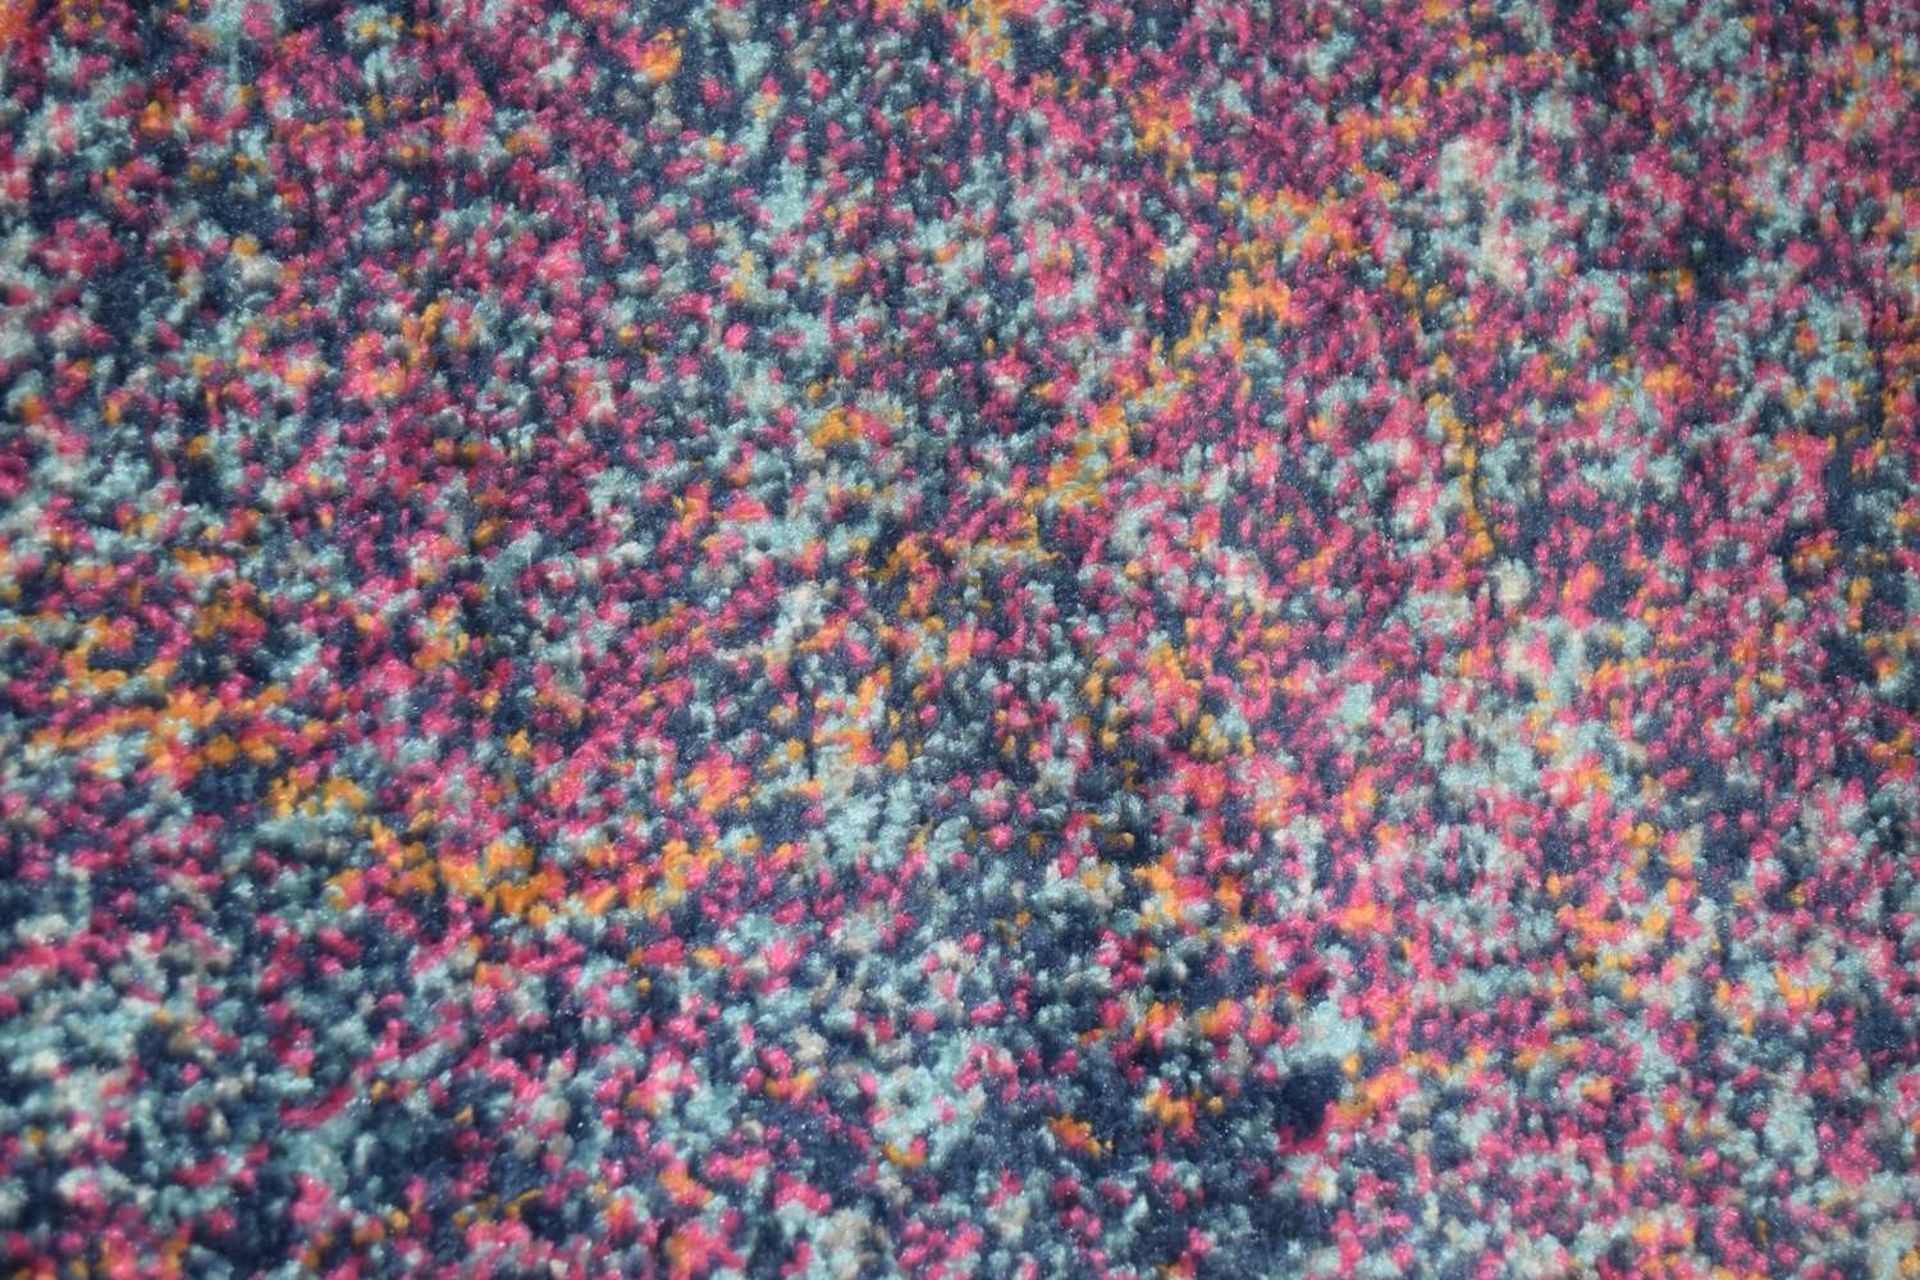 Bodrum purple floor rug, 2ft x 3ft